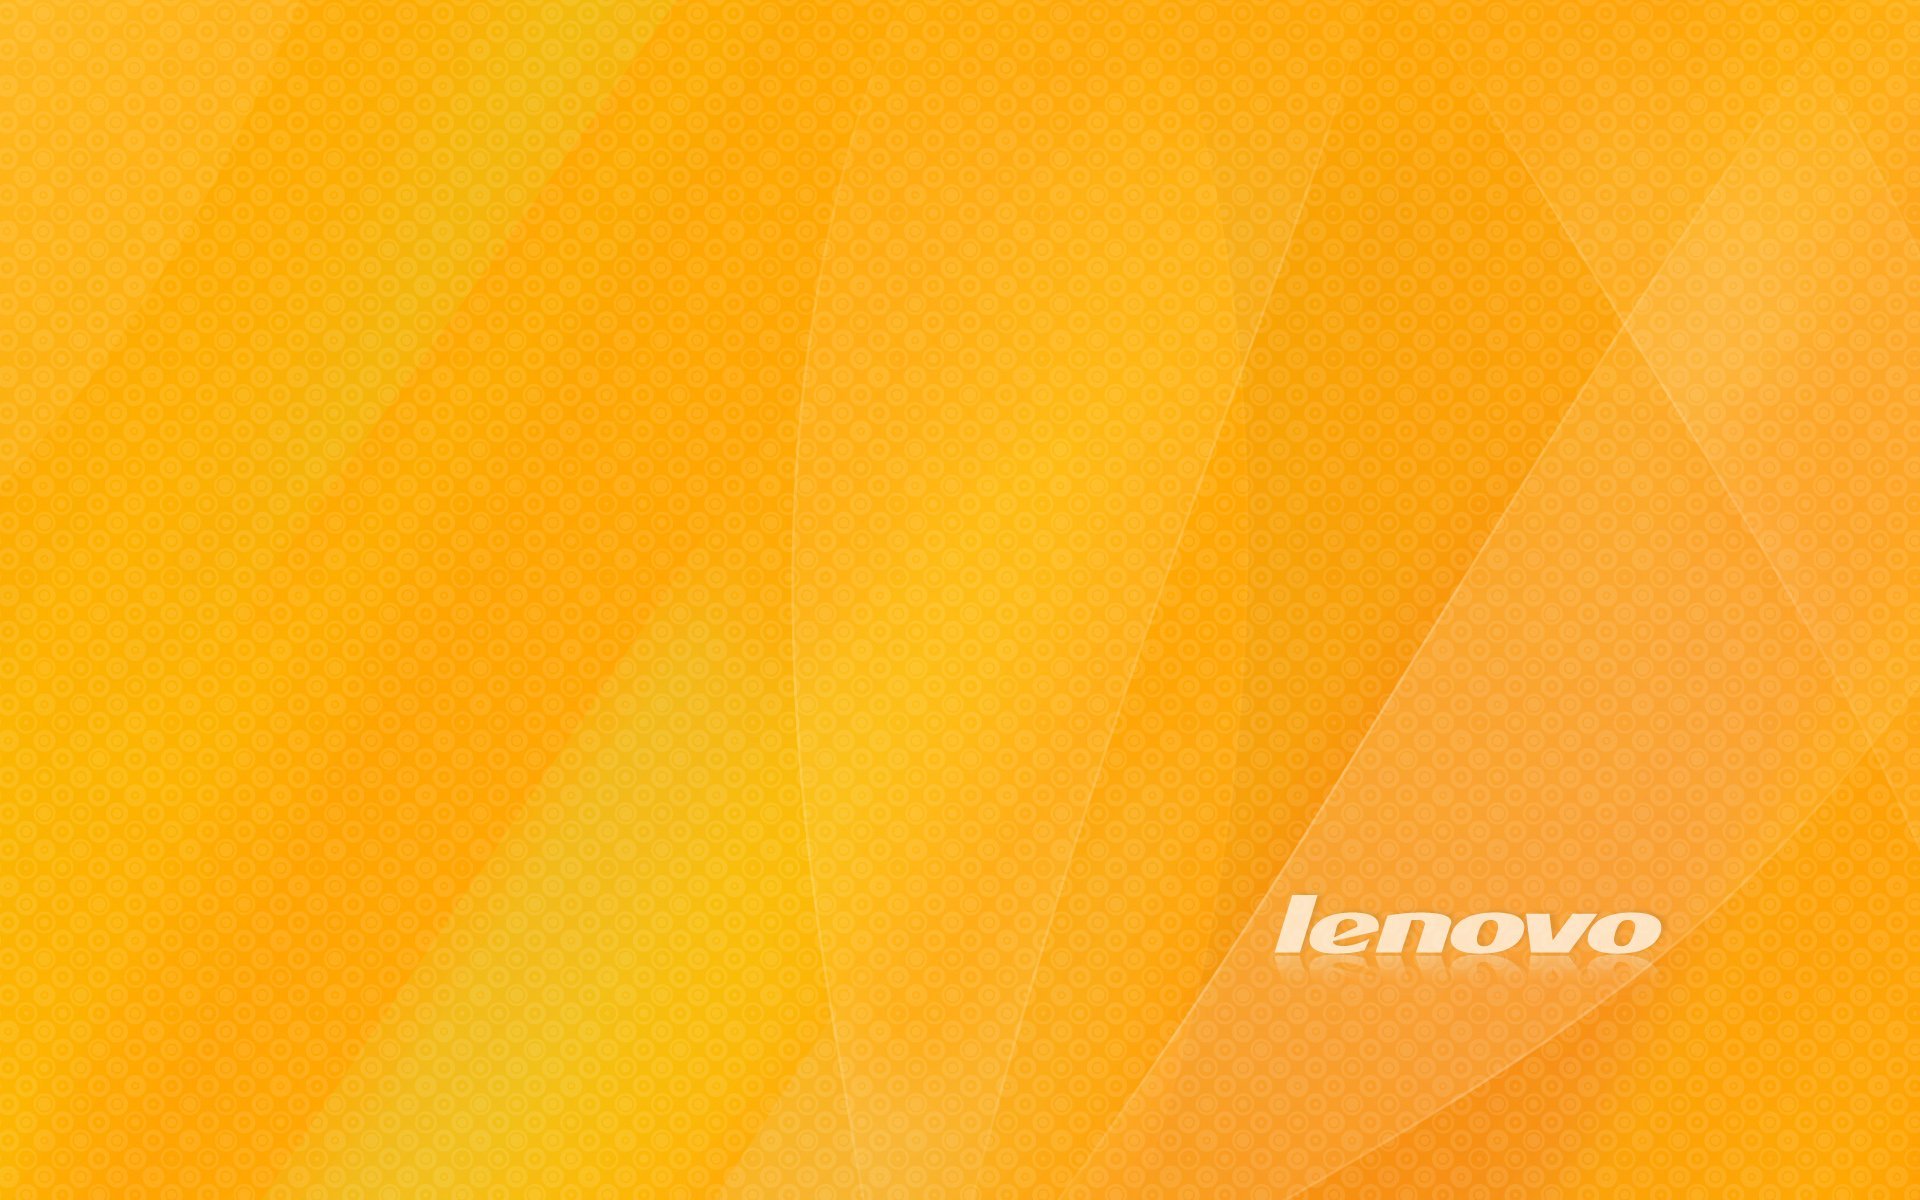 Lenovo Wallpaper Terbaikco 1920x1200